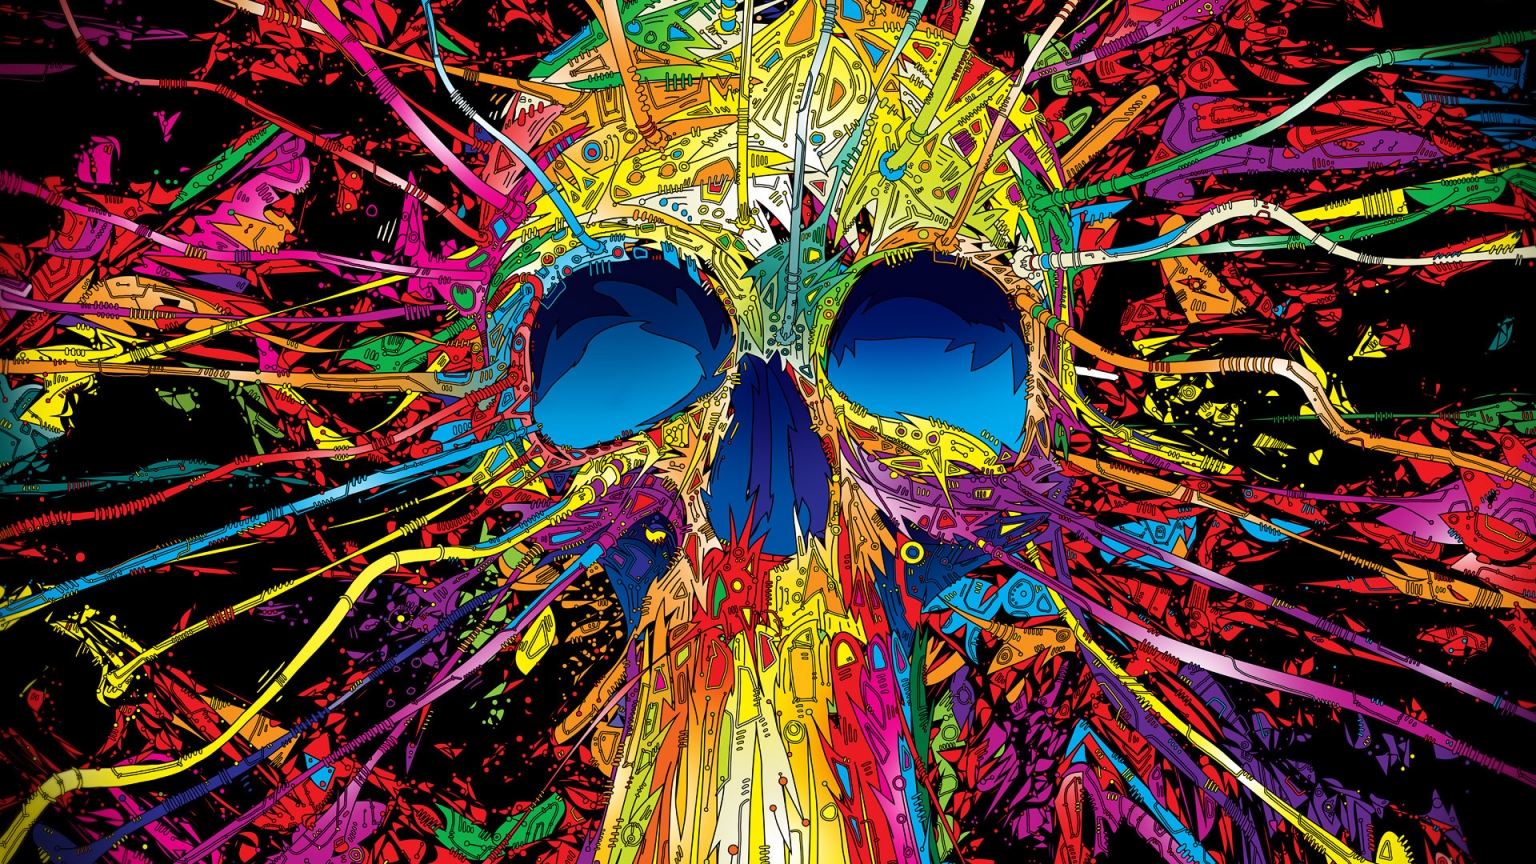 Colourful Skull for 1536 x 864 HDTV resolution